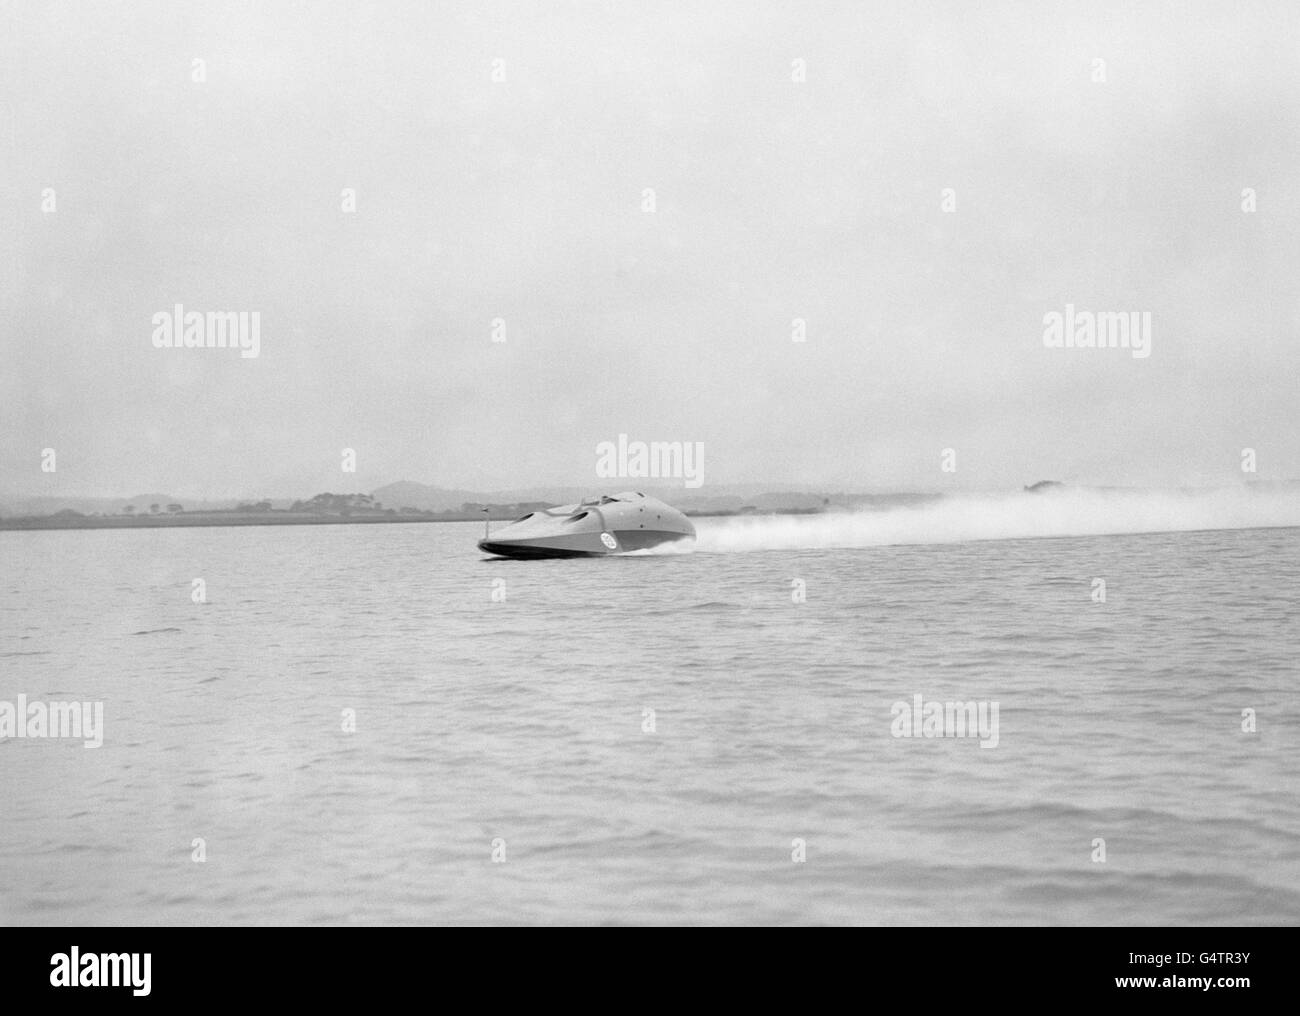 Sir Malcolm Campbell bei der Kontrolle seines neuesten Jet-Propellers Bluebird während eines Testlaufs über die ruhigen Gewässer von Poole Harbour Stockfoto